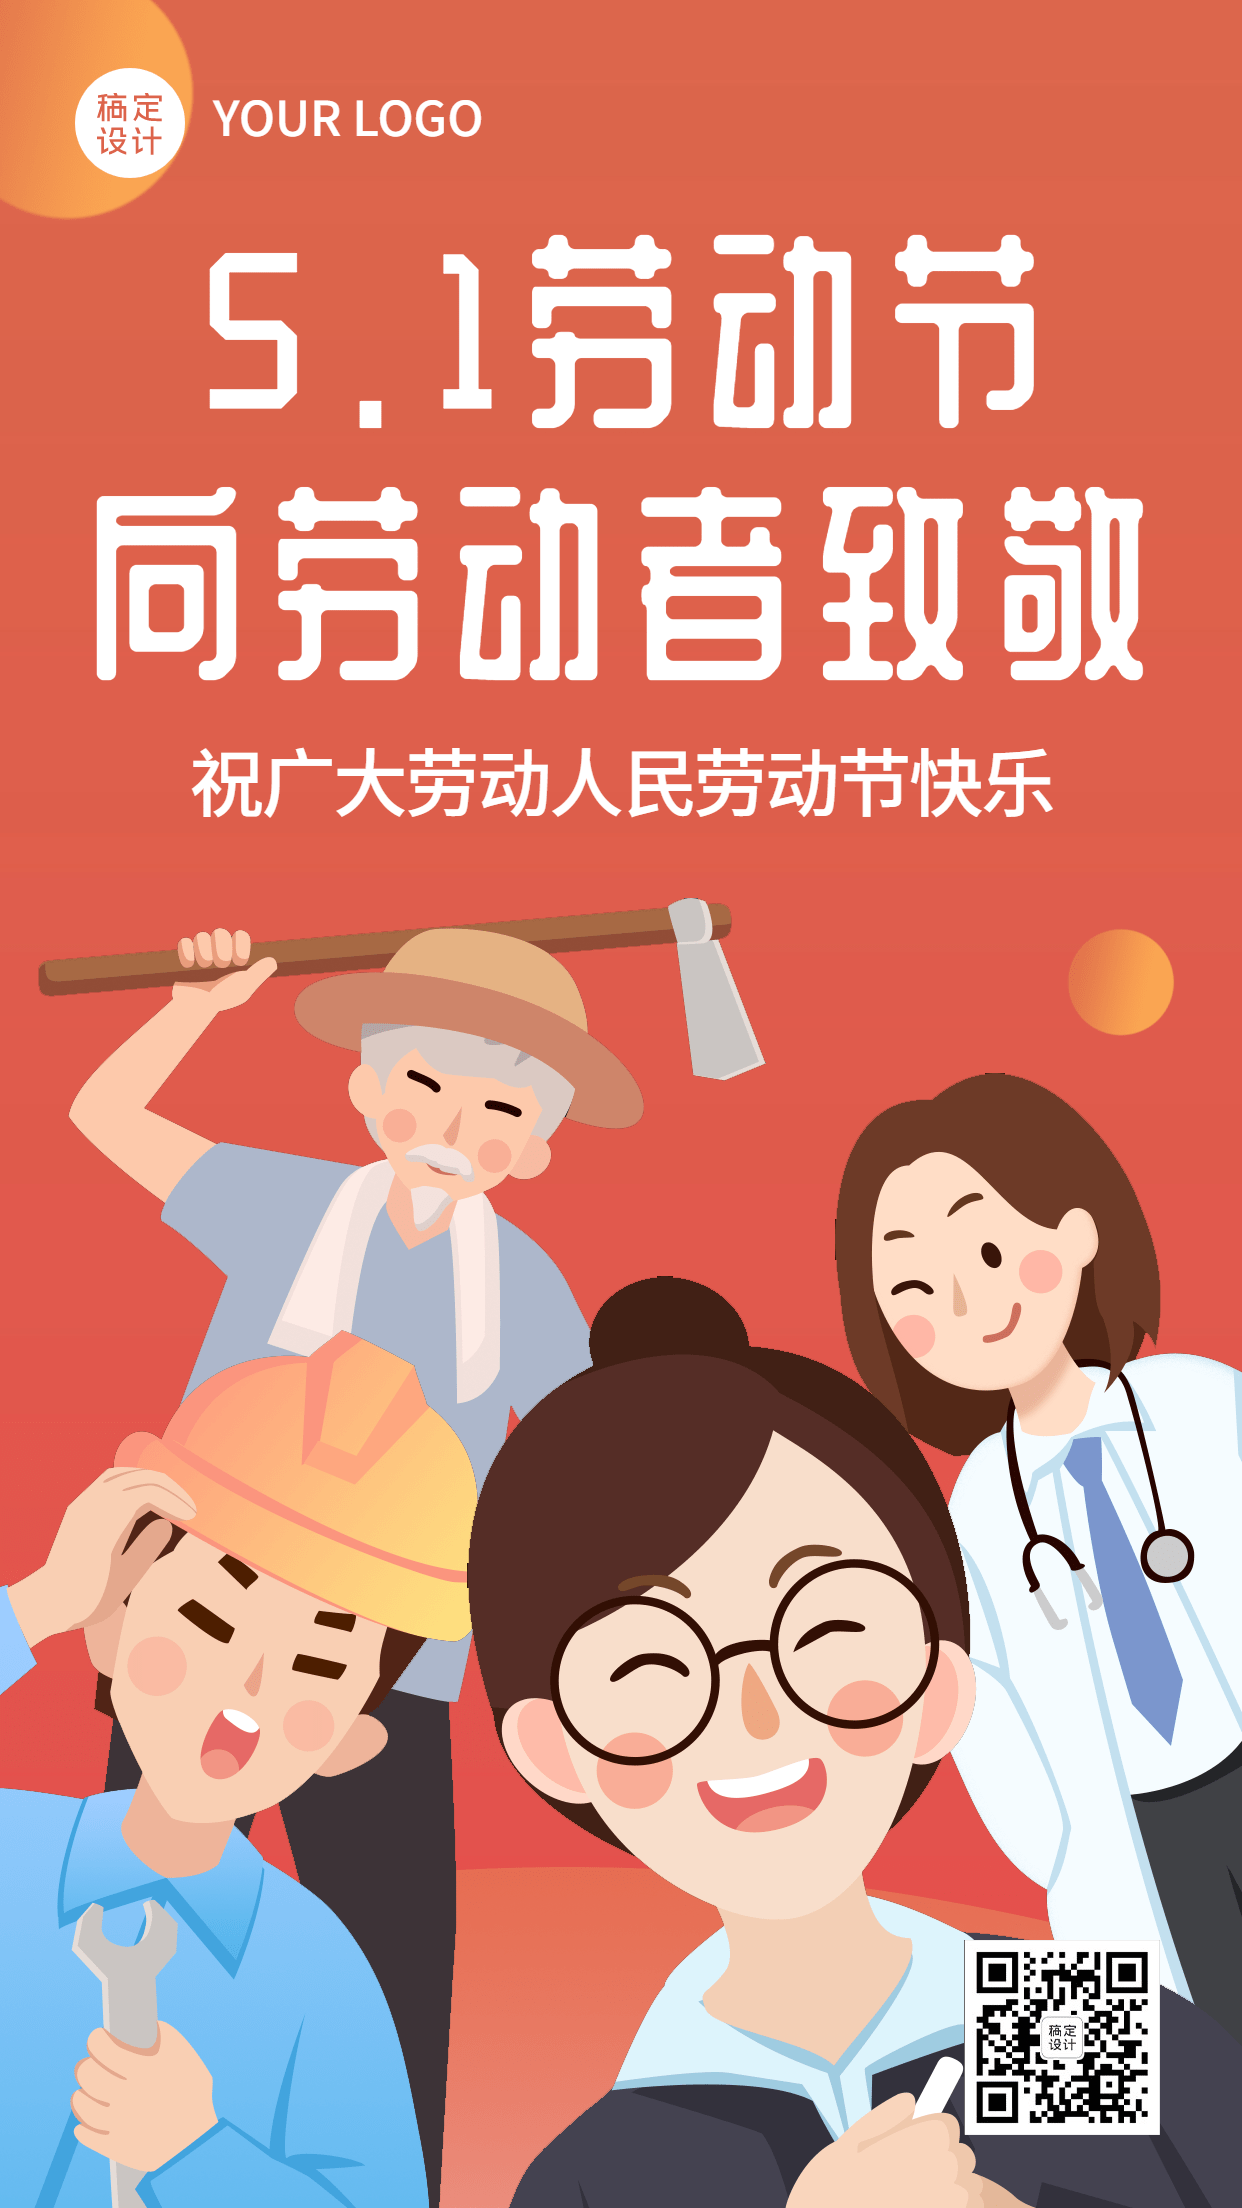 劳动节节日祝福插画手机海报预览效果